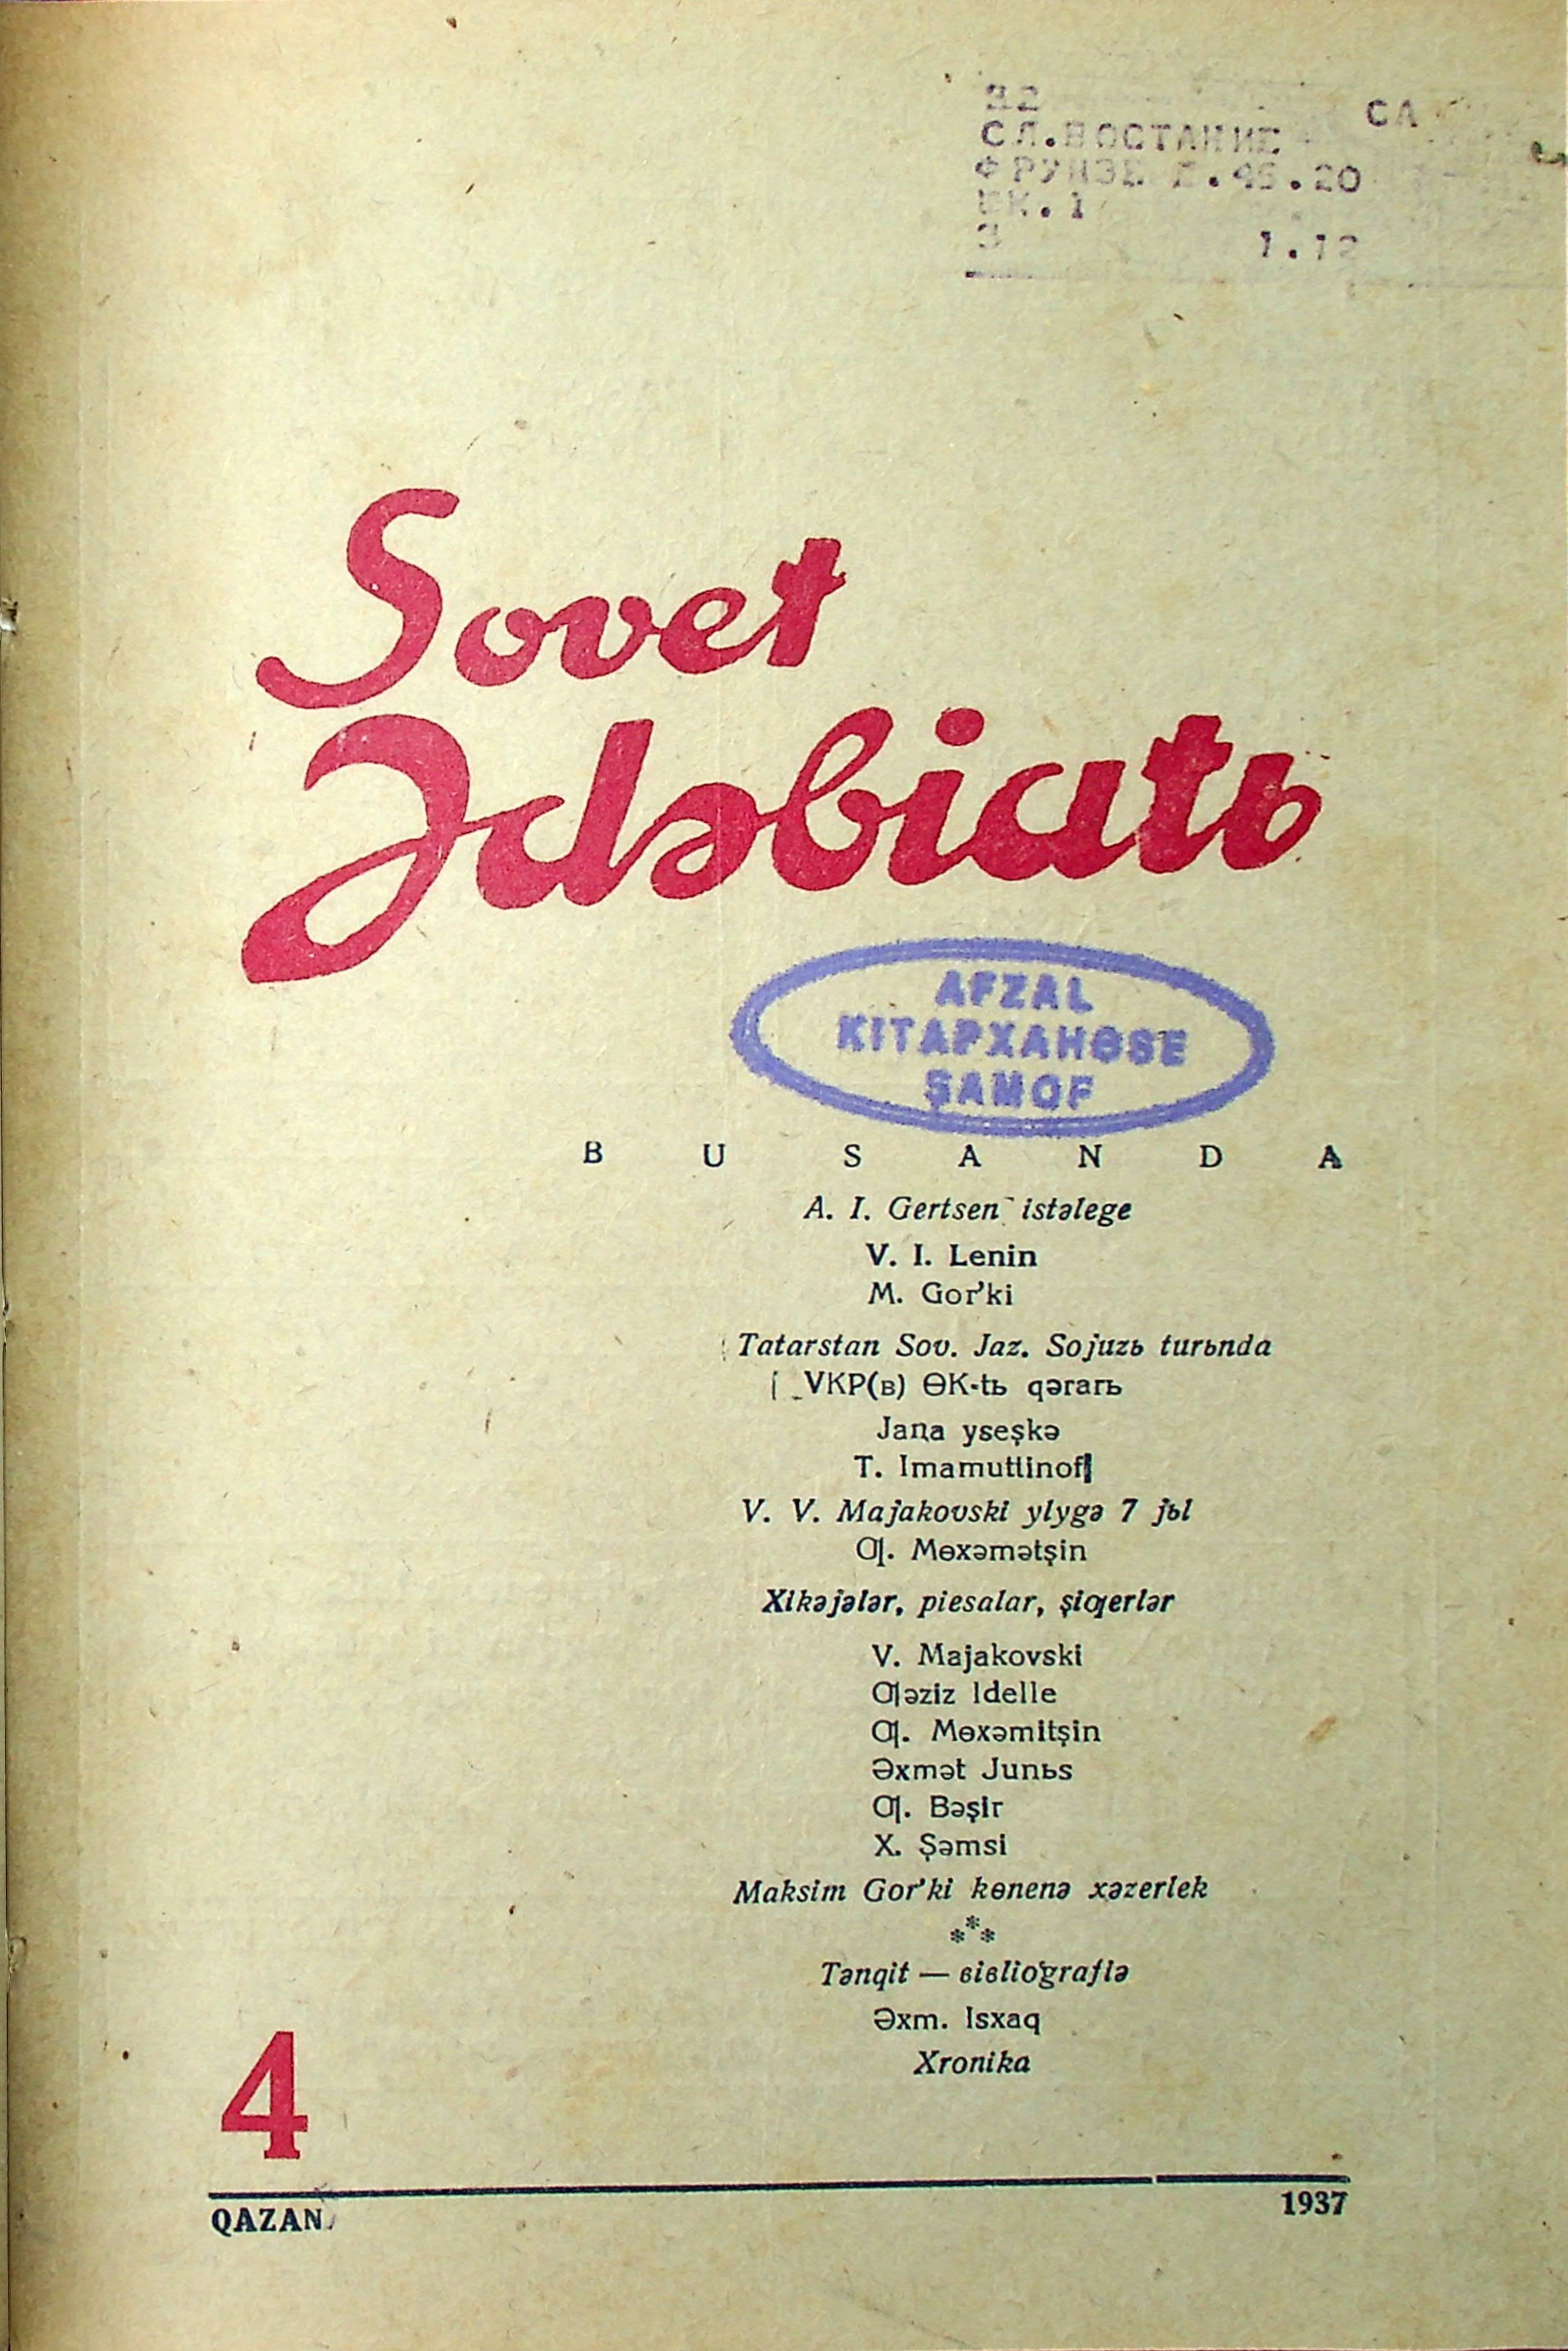 Фото журнала 1937 года. Выпуск номер 4